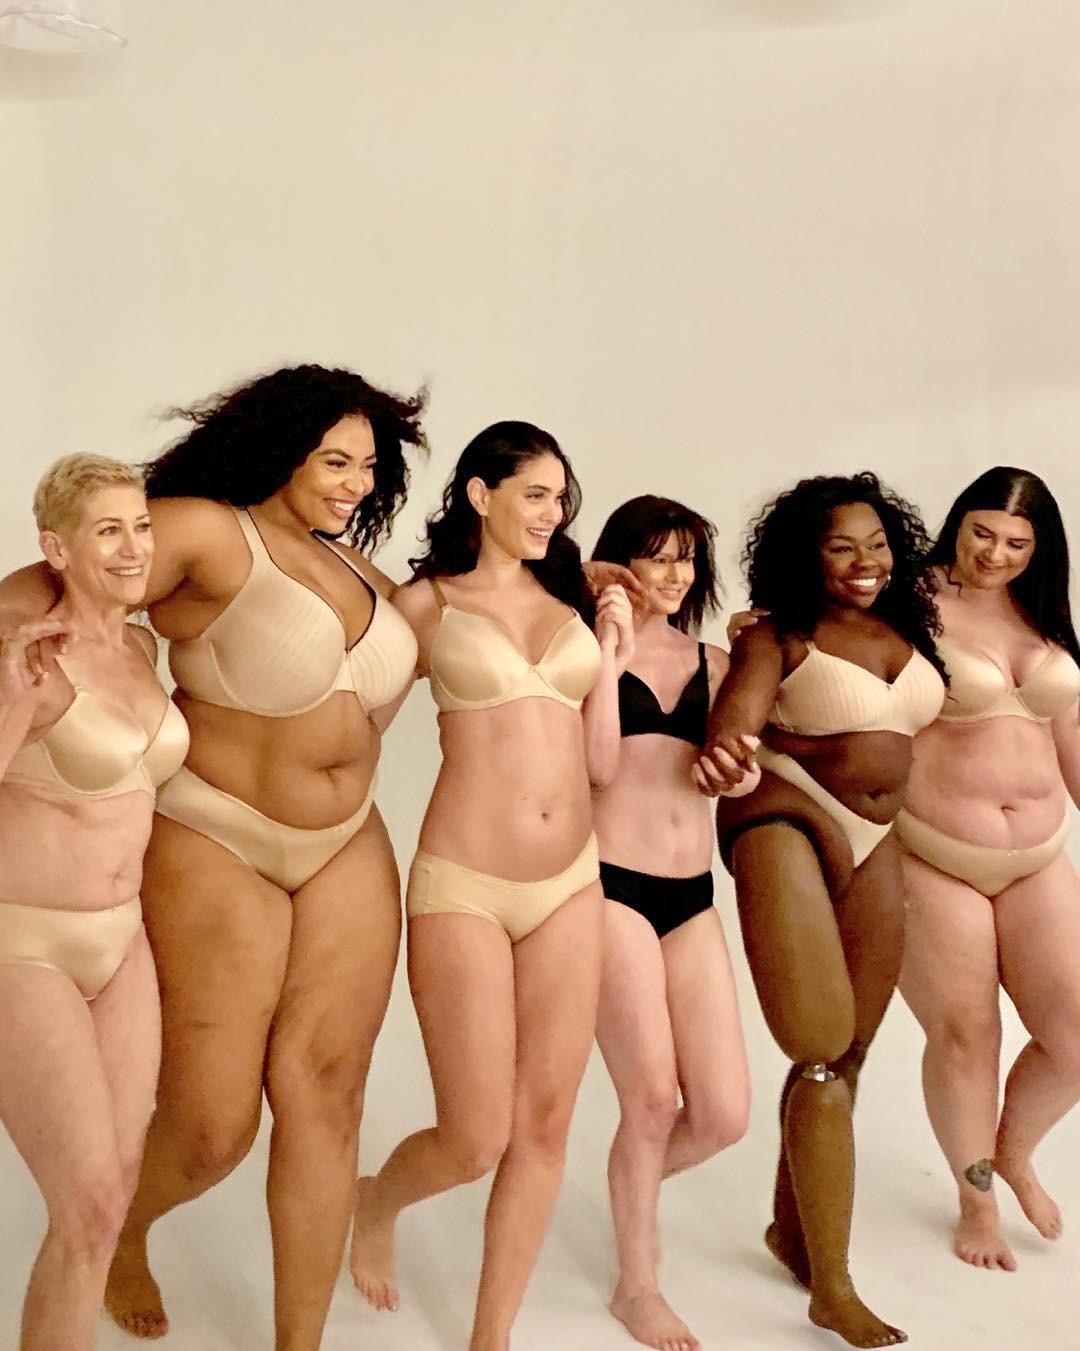 Marca de lingerie aposta em mulheres reais para campanha (Foto: Reprodução/Instagram)